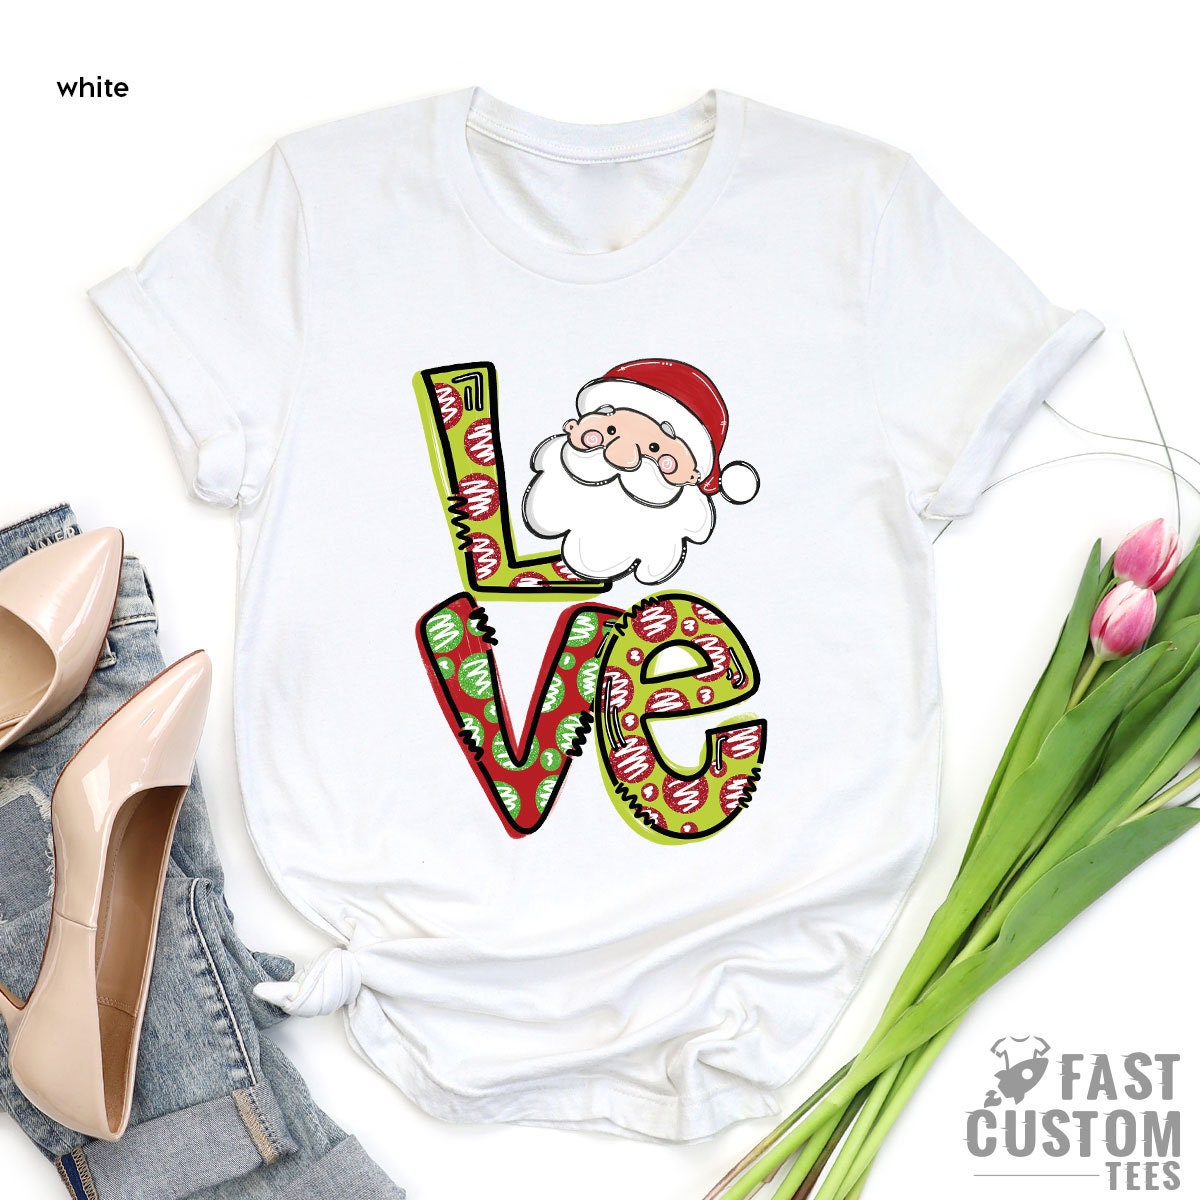 Christmas T-Shirt, Merry Love Shirt, Women Christmas Tree T-shirt, Christmas Gift, Cute Christmas Tee, Family Christmas Shirt, Merry Tee - Fastdeliverytees.com